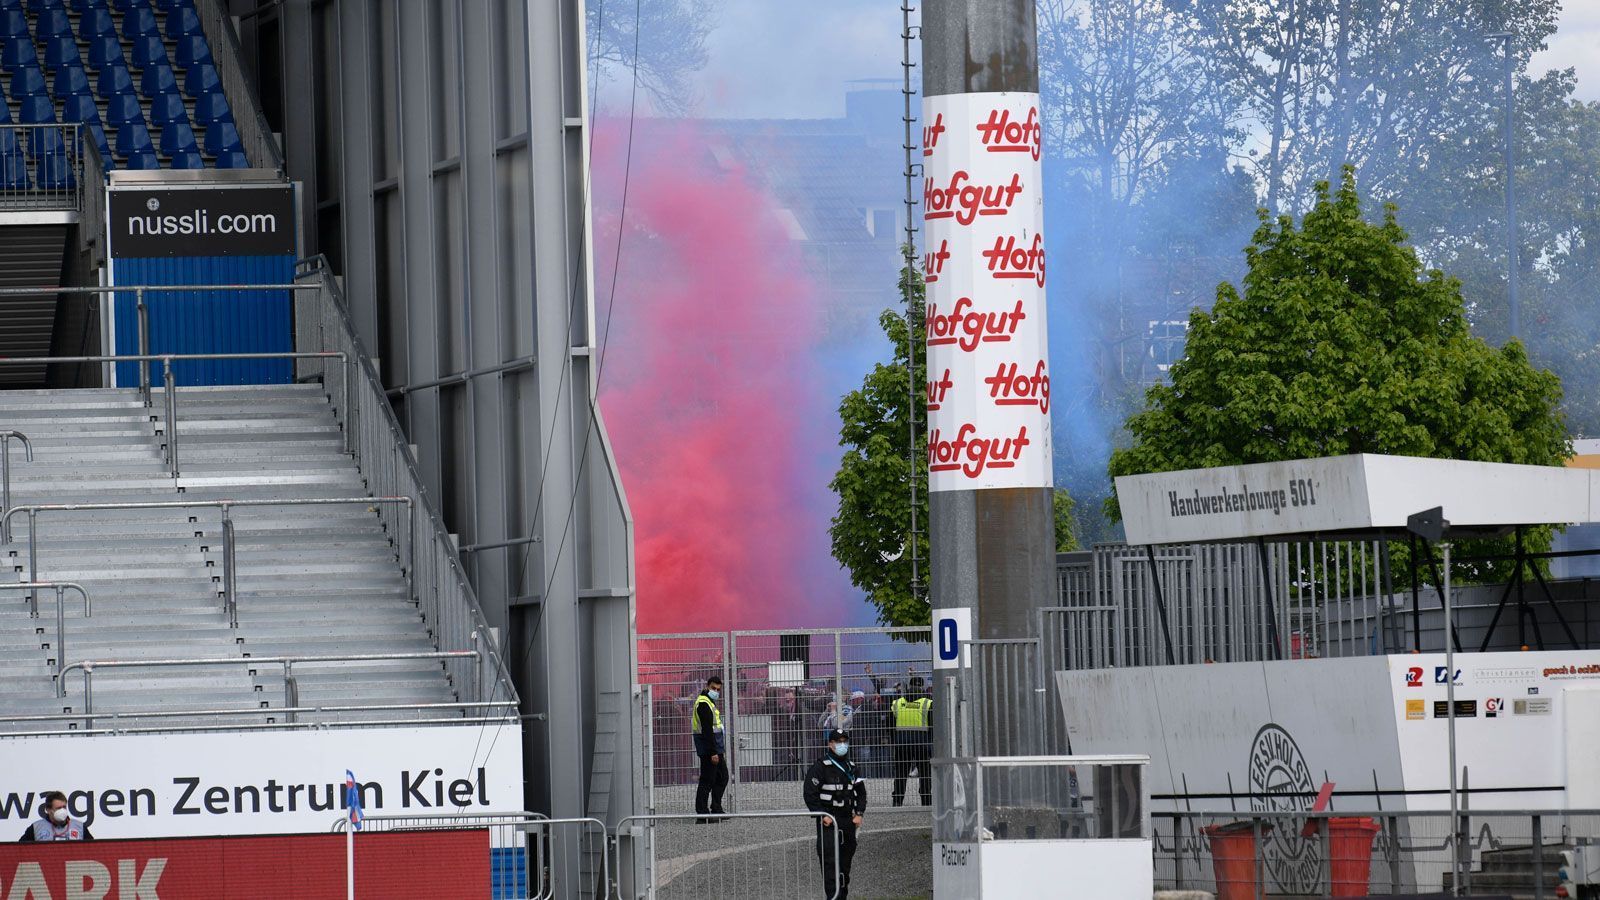 
                <strong>Kiel: Pyrotechnik auch im Norden</strong><br>
                Nicht nur in Fürth wurde gezündelt, auch am Holstein-Stadion kam Pyrotechnik in den Vereinsfarben zum Einsatz.
              